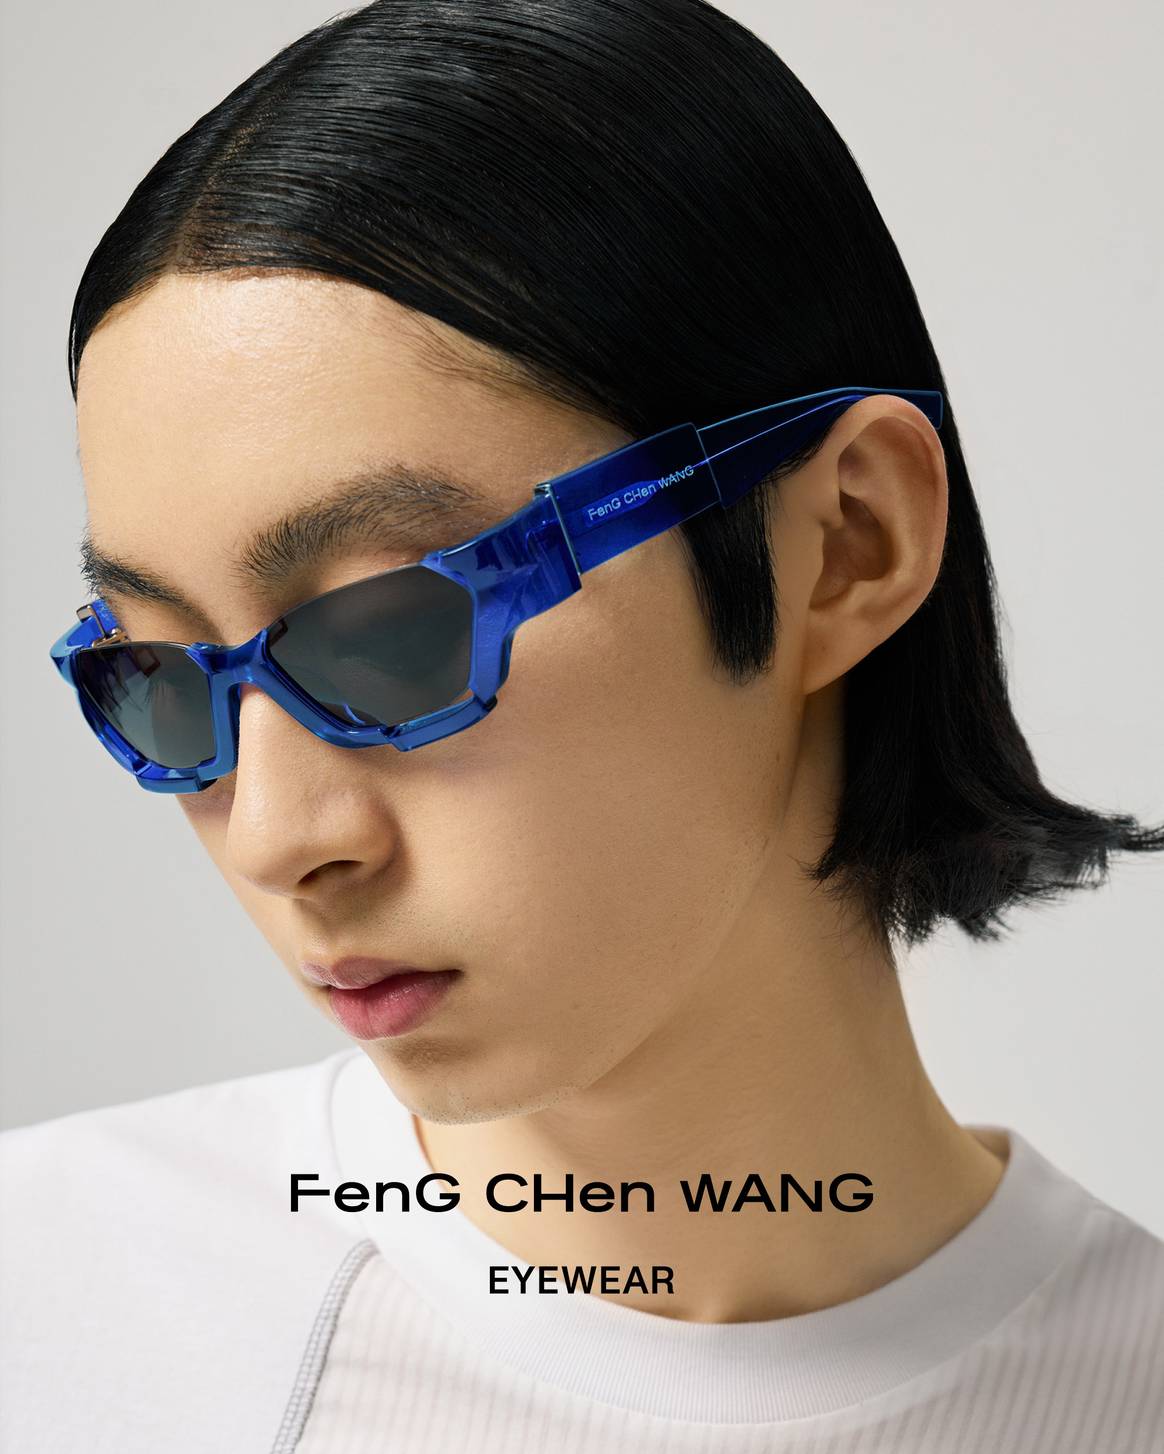 Feng Chen Wang eyewear